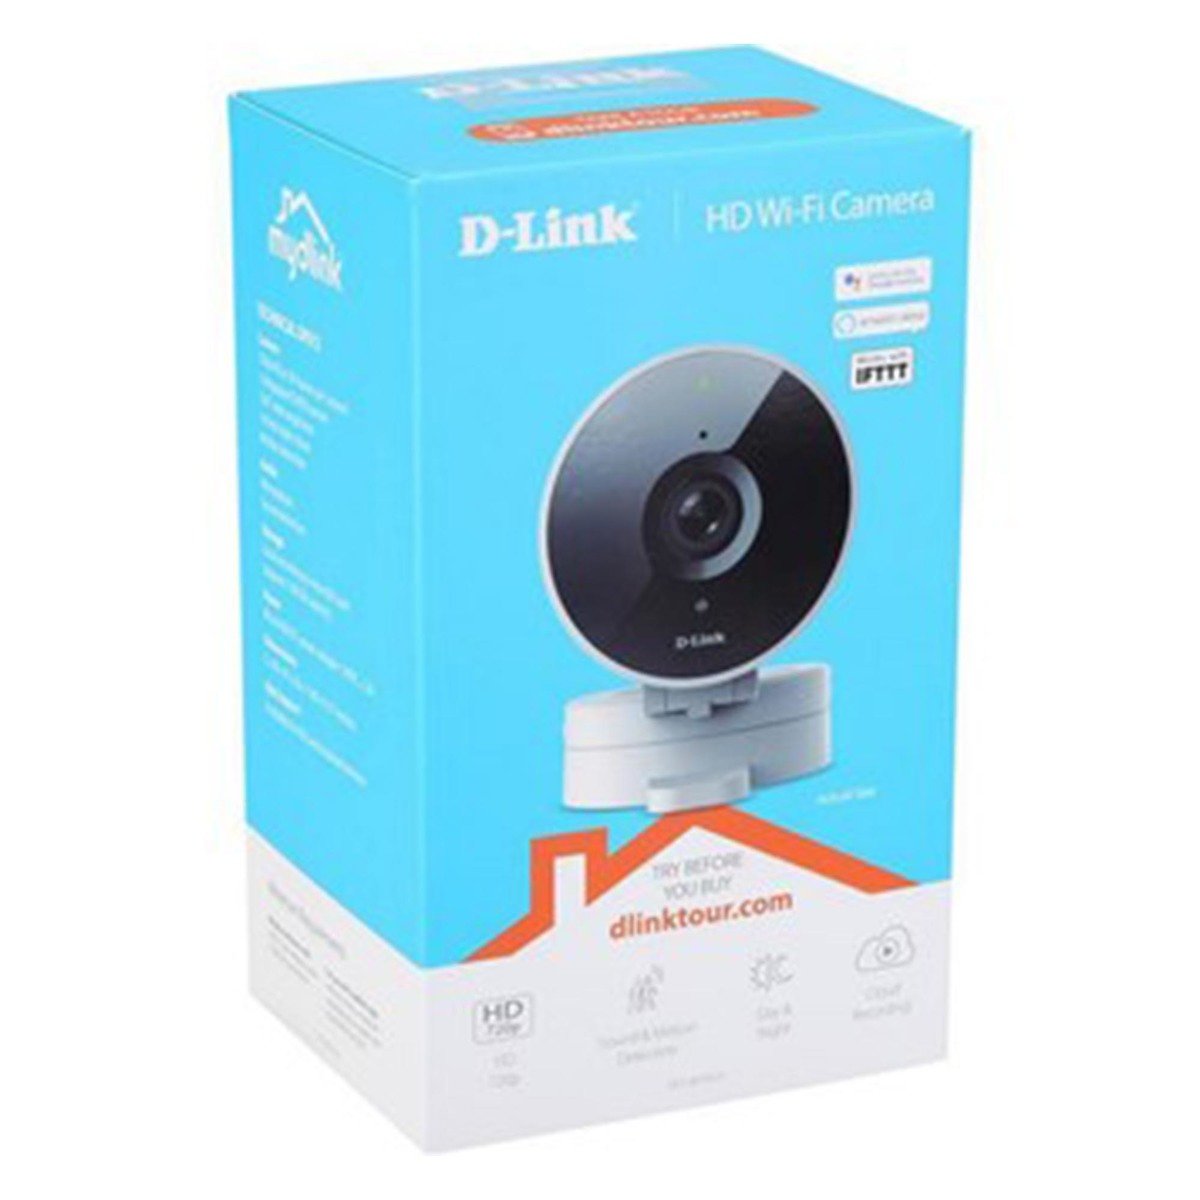 D-Link HD Wi-Fi Indoor Cloud Recording Camera - DCS-8010LH